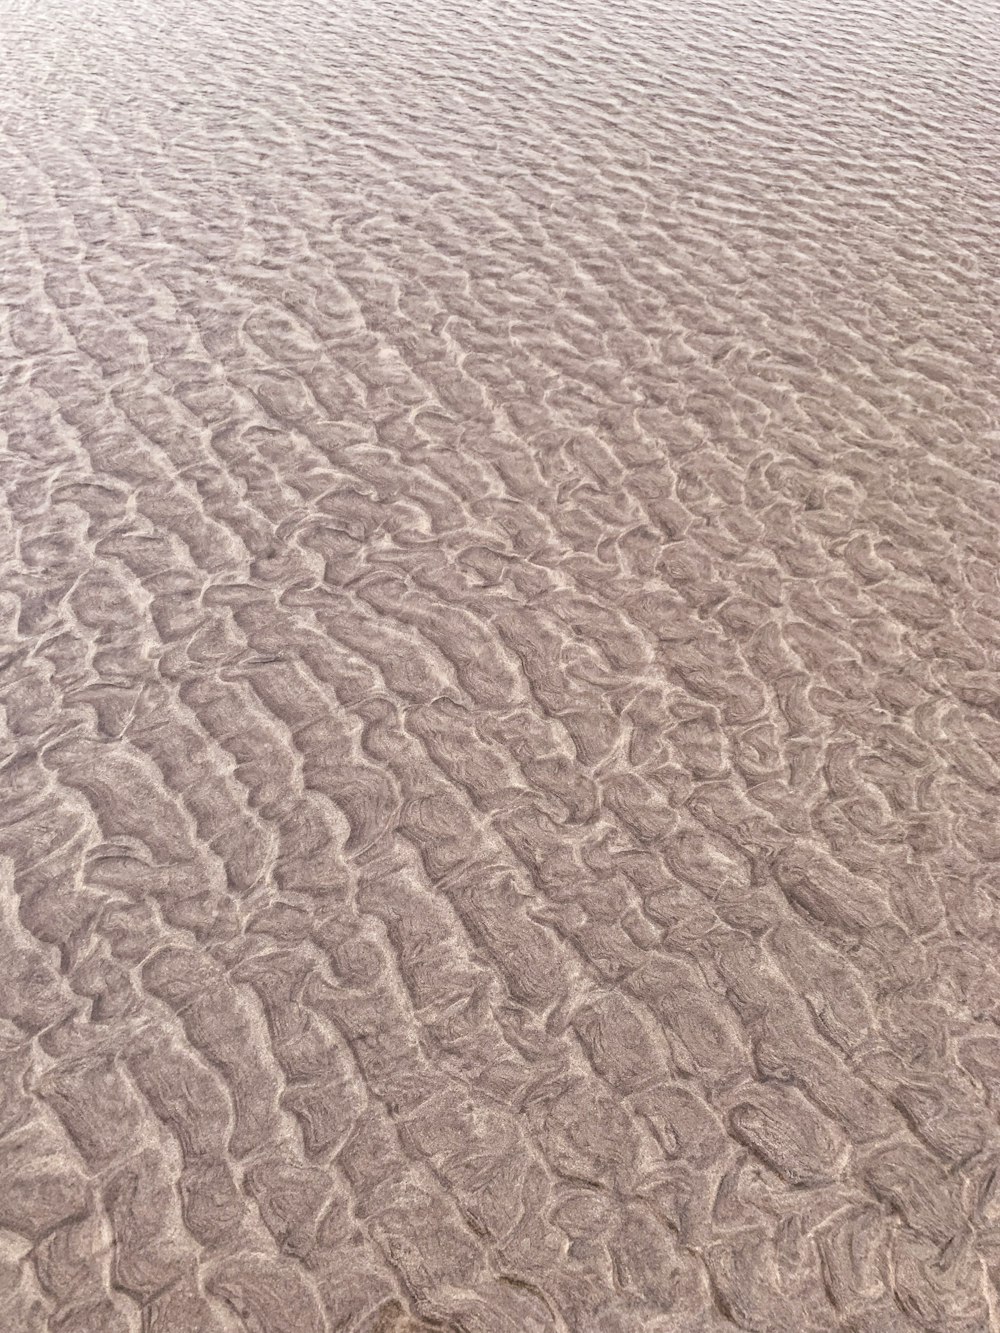 areia marrom durante o dia